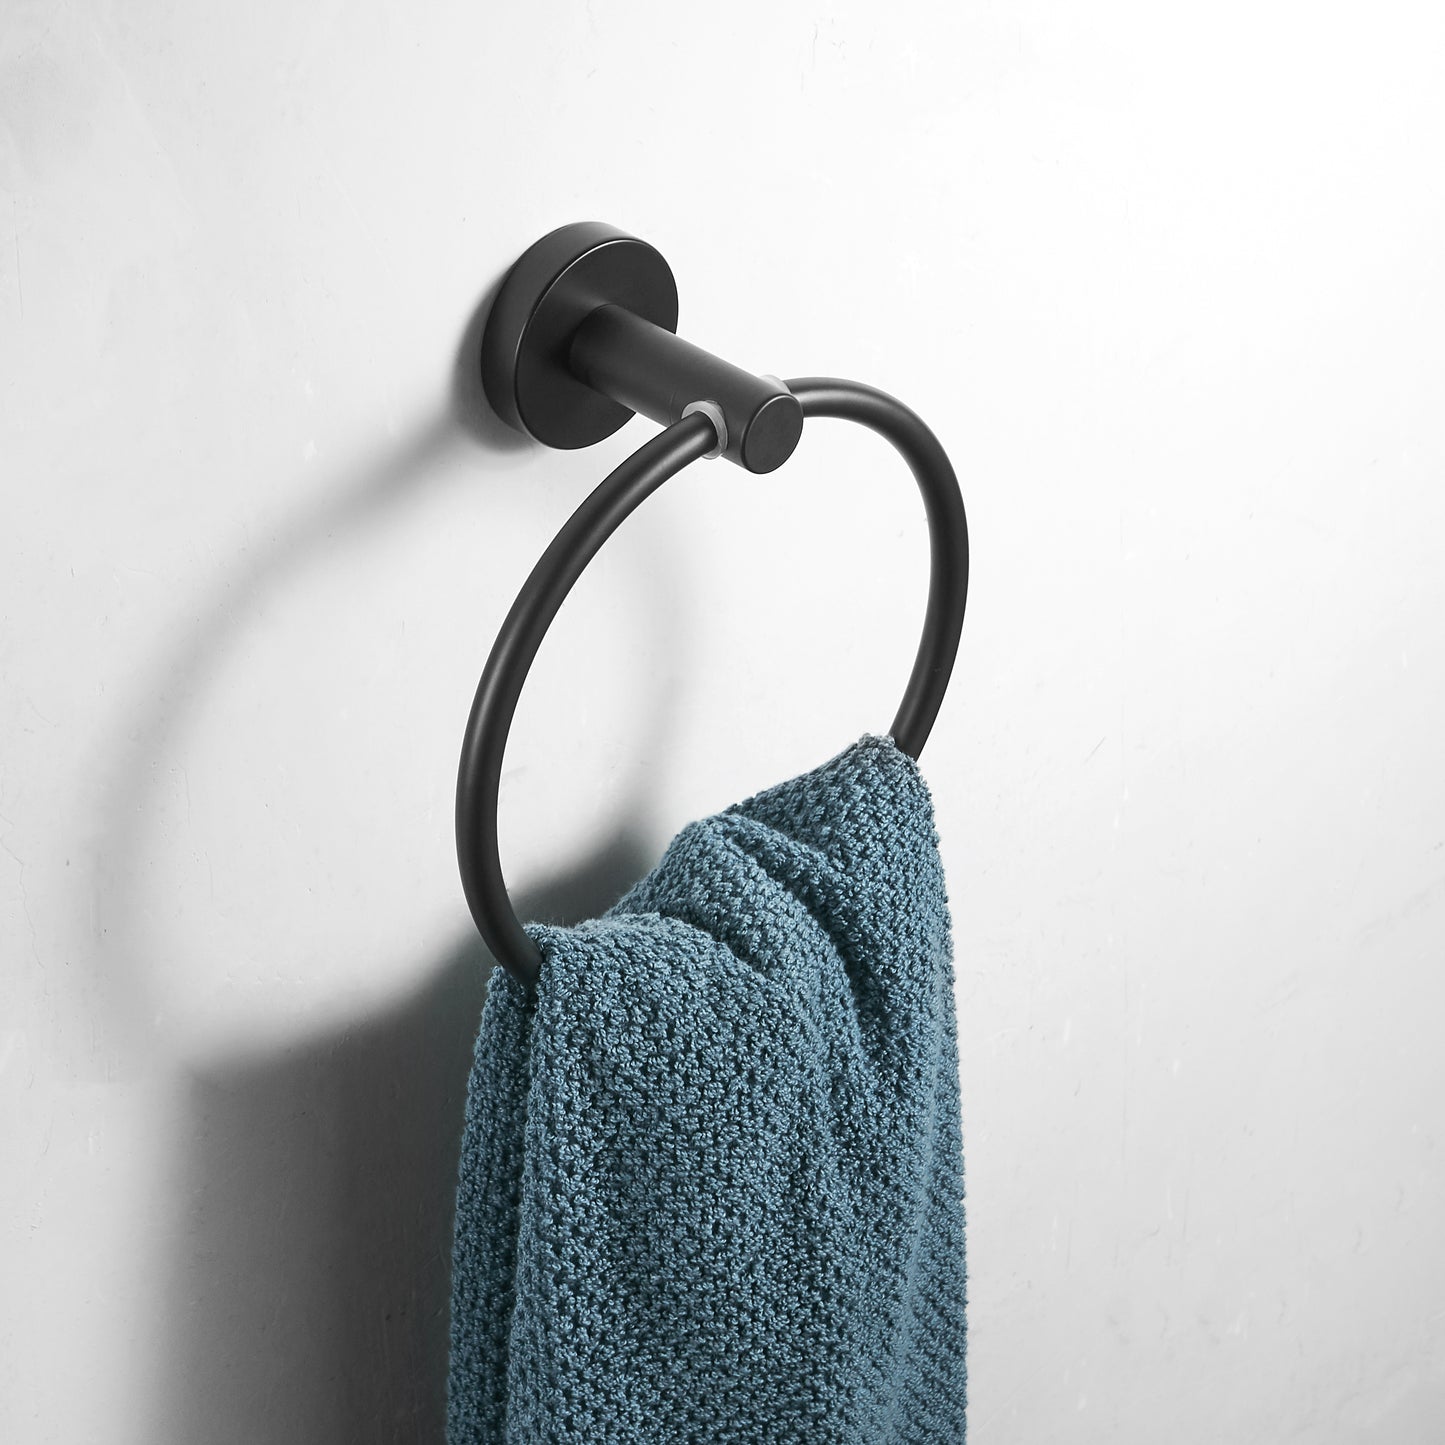 Modern Bathroom Black Hardware Set | 304 Stainless Steel Towel Rack Paper Towel Holder Towel Bar Hook Bathroom Accessories - WELQUEEN